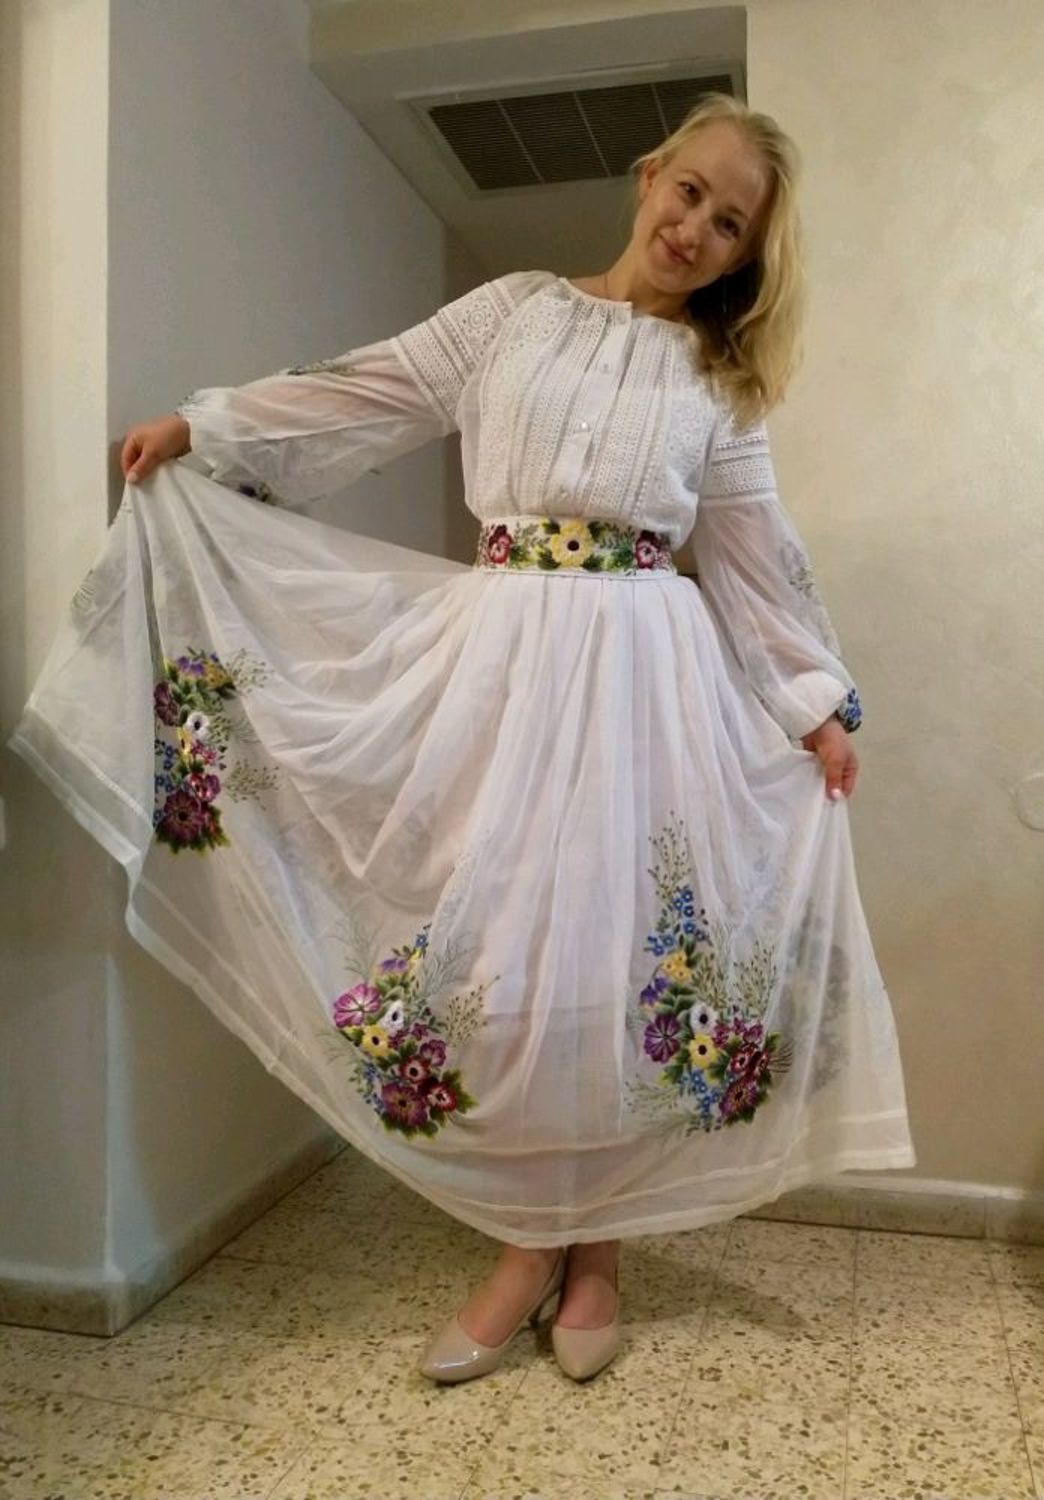 Фото №1 к отзыву покупателя Vadim Fridyev о товаре Белое нарядное платье в пол с ручной вышивкой гладью